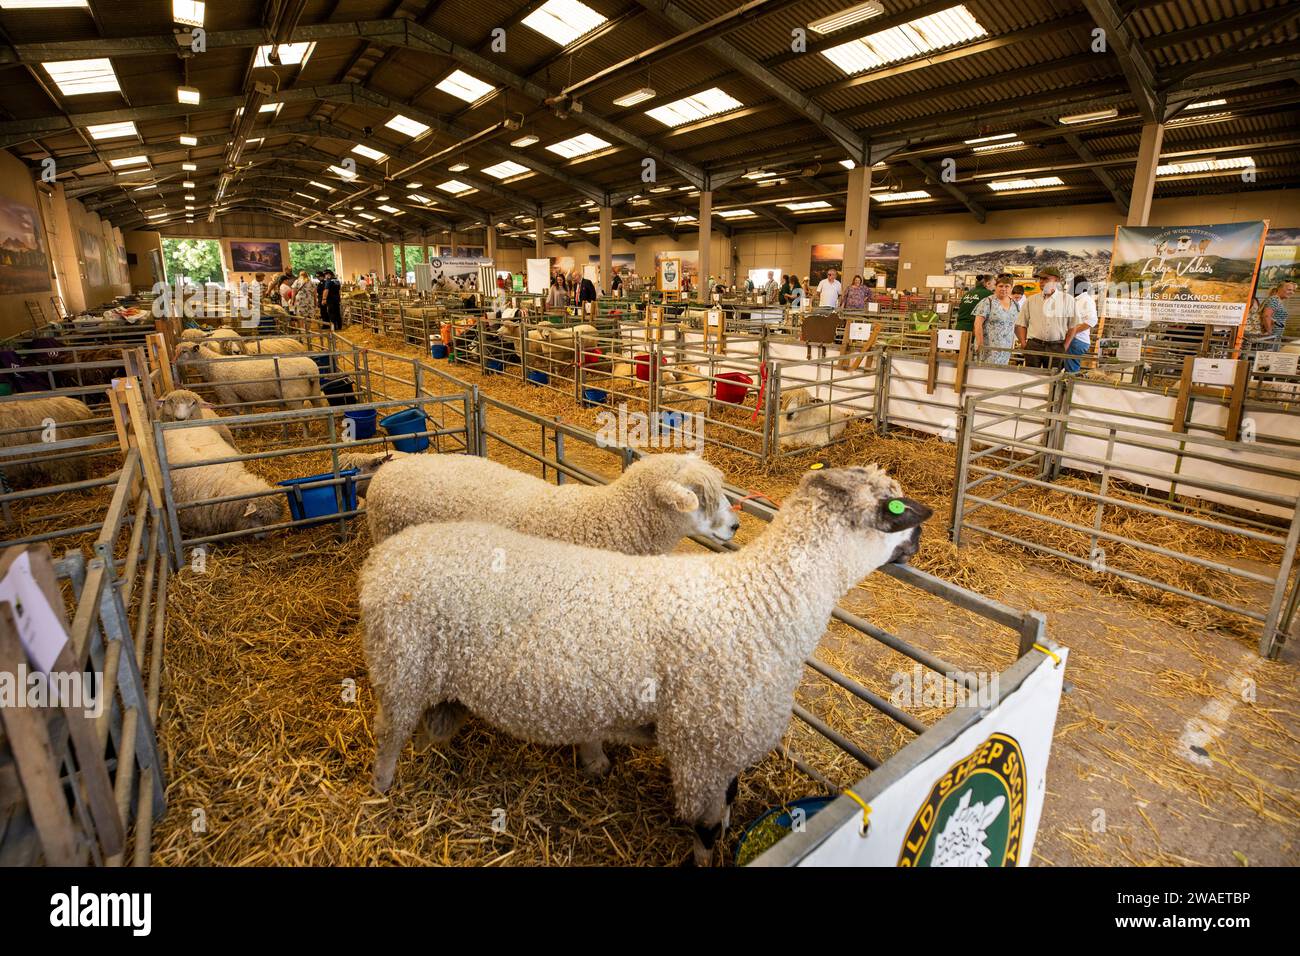 Royaume-Uni, Angleterre, Worcestershire, Malvern Wells, Royal 3 Counties Show, Cotswold mouton dans des enclos intérieurs Banque D'Images